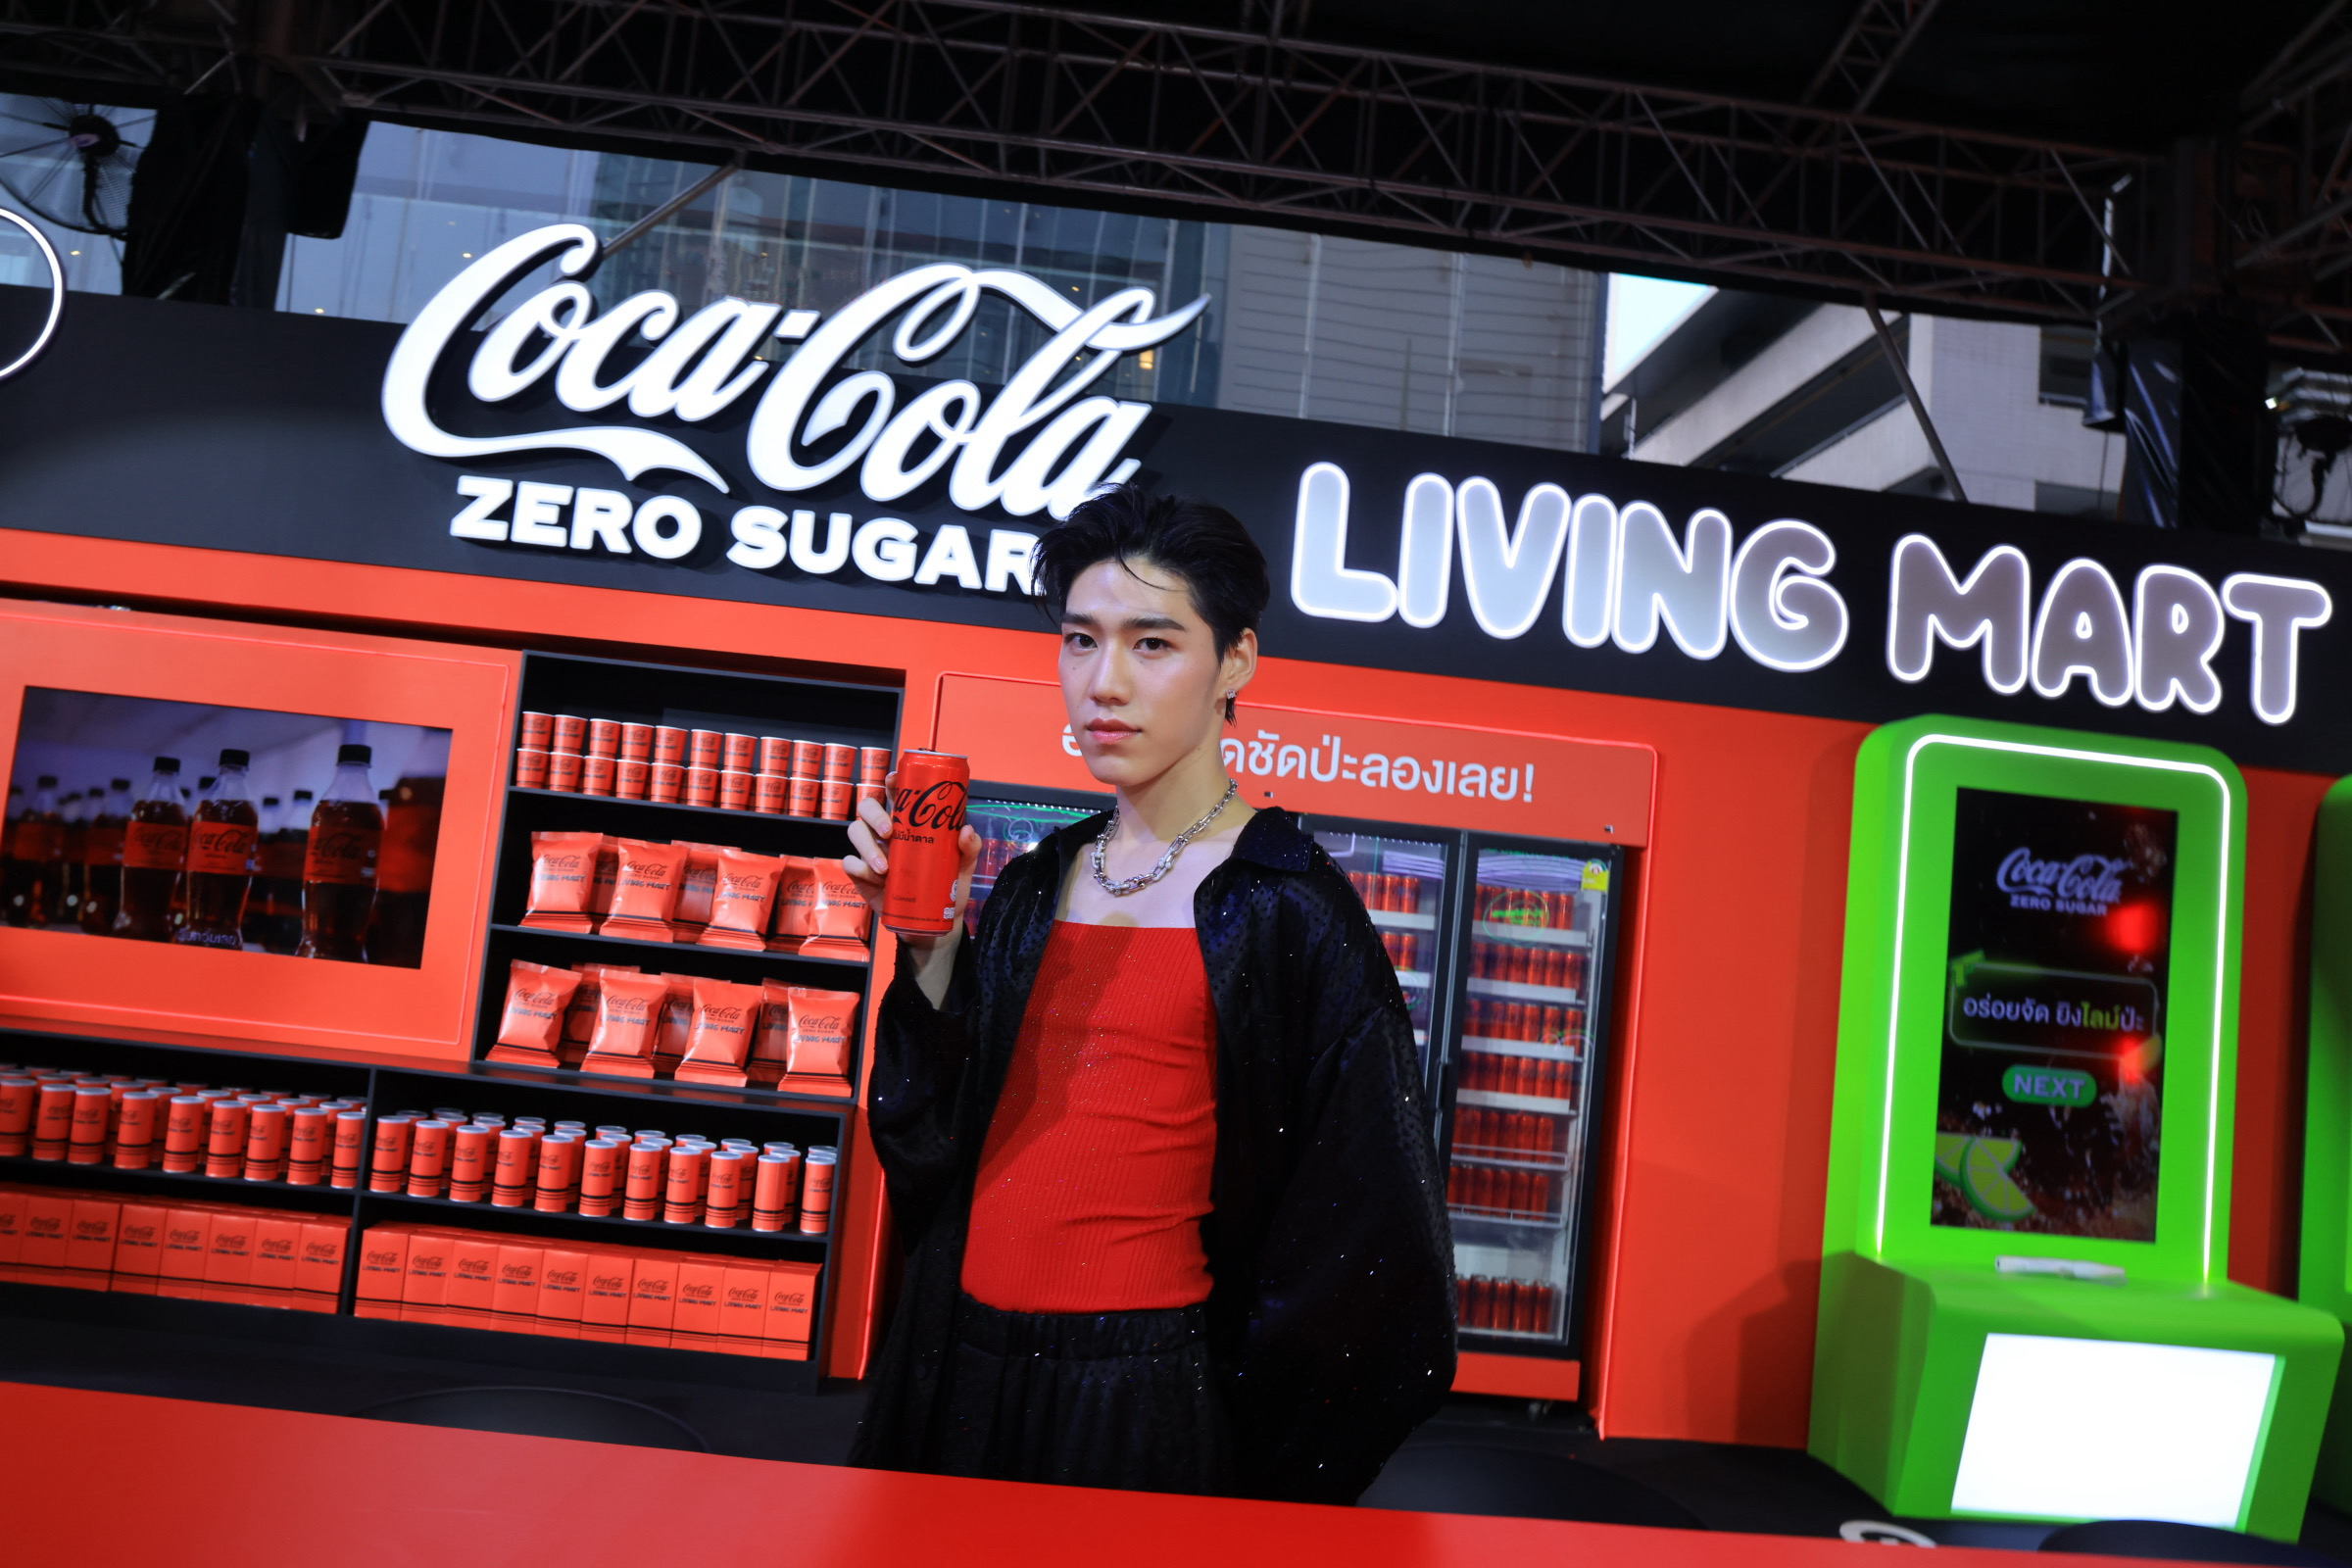 อร่อยจัดชัดป่ะ! “พีพี-กฤษฏ์” จุดกระแสท้าให้ลอง “โค้ก” ซีโร่ ในงาน “Coke” Zero Tastival พร้อมเสิร์ฟความอร่อยซ่า 2 ผลิตภัณฑ์ใหม่ “โค้ก” ซีโร่ กลิ่นไลม์ และ “โค้ก” ซีโร่ ครีเอชั่นส์ K-Wave